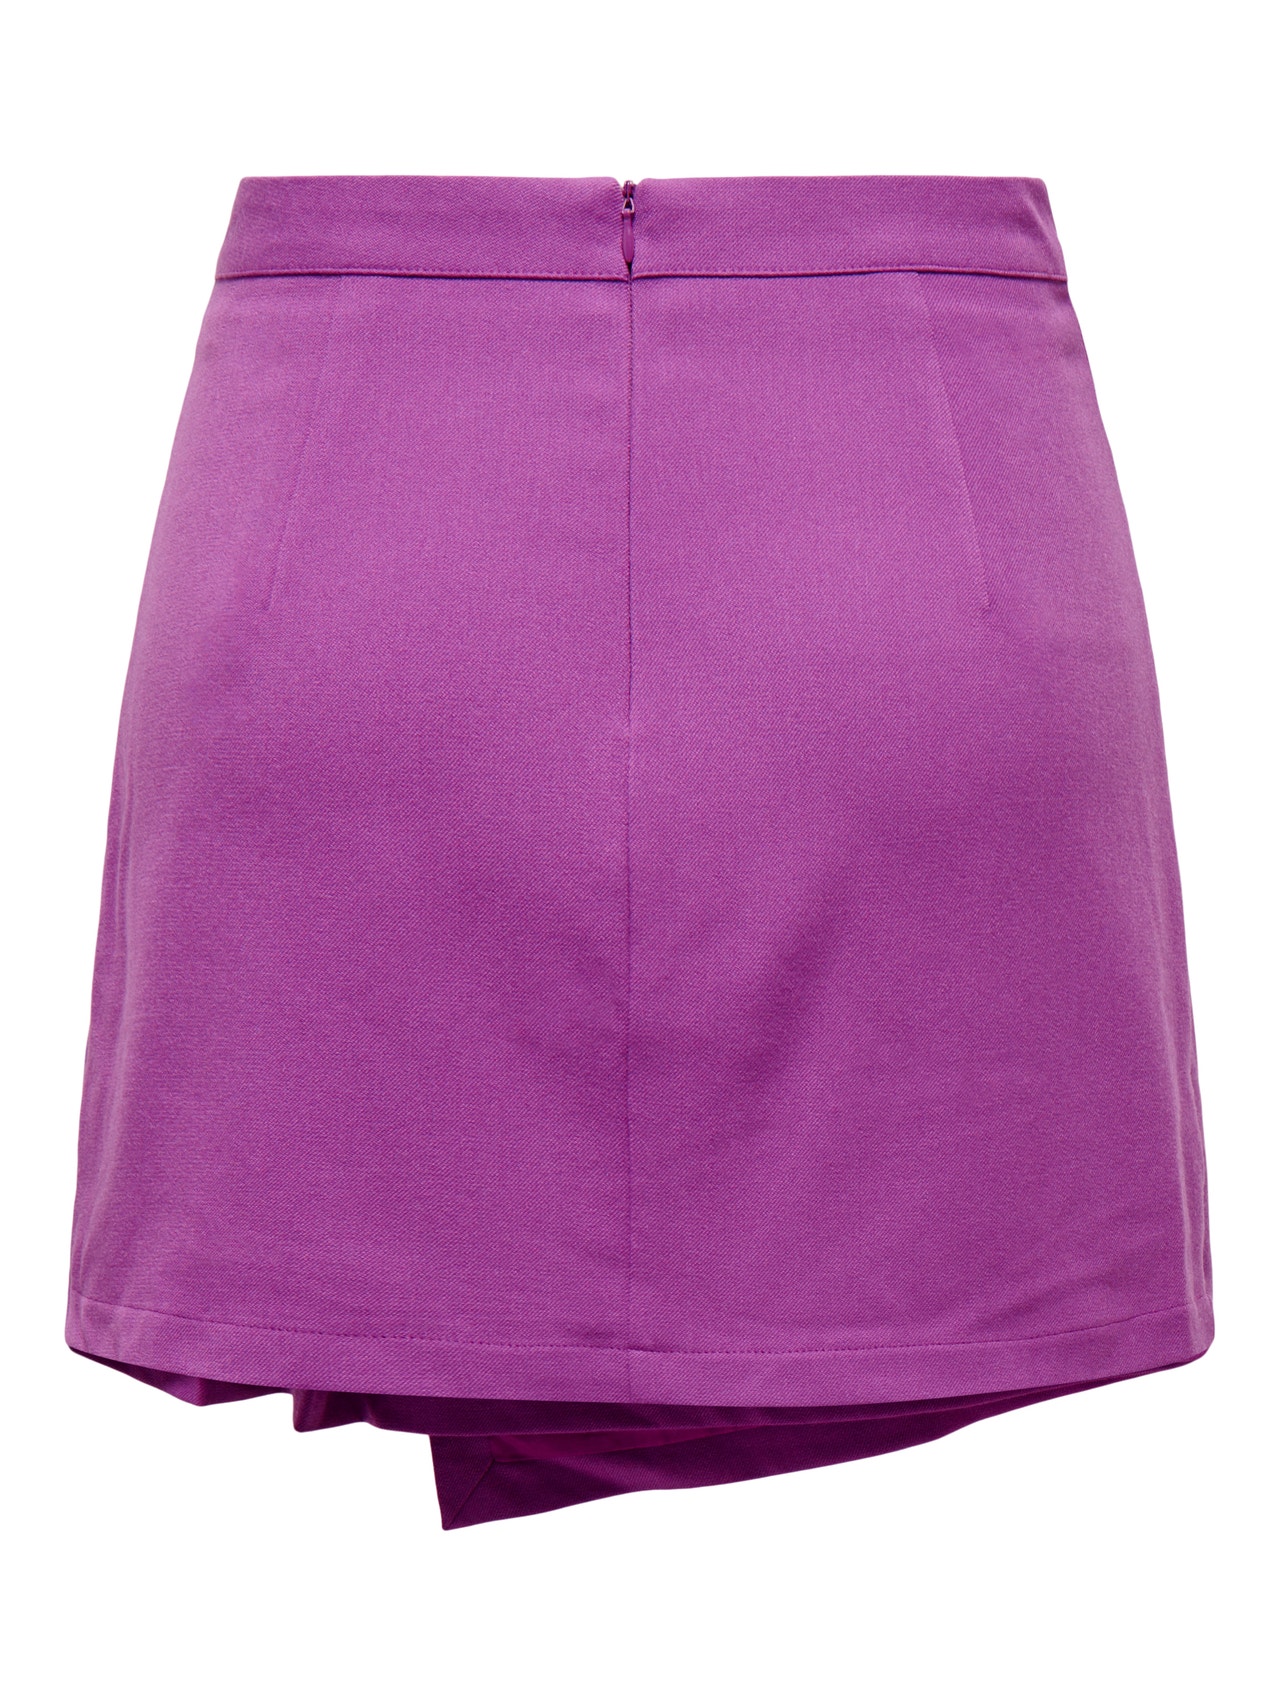 ONLY High waist Short skirt -Willowherb - 15275627